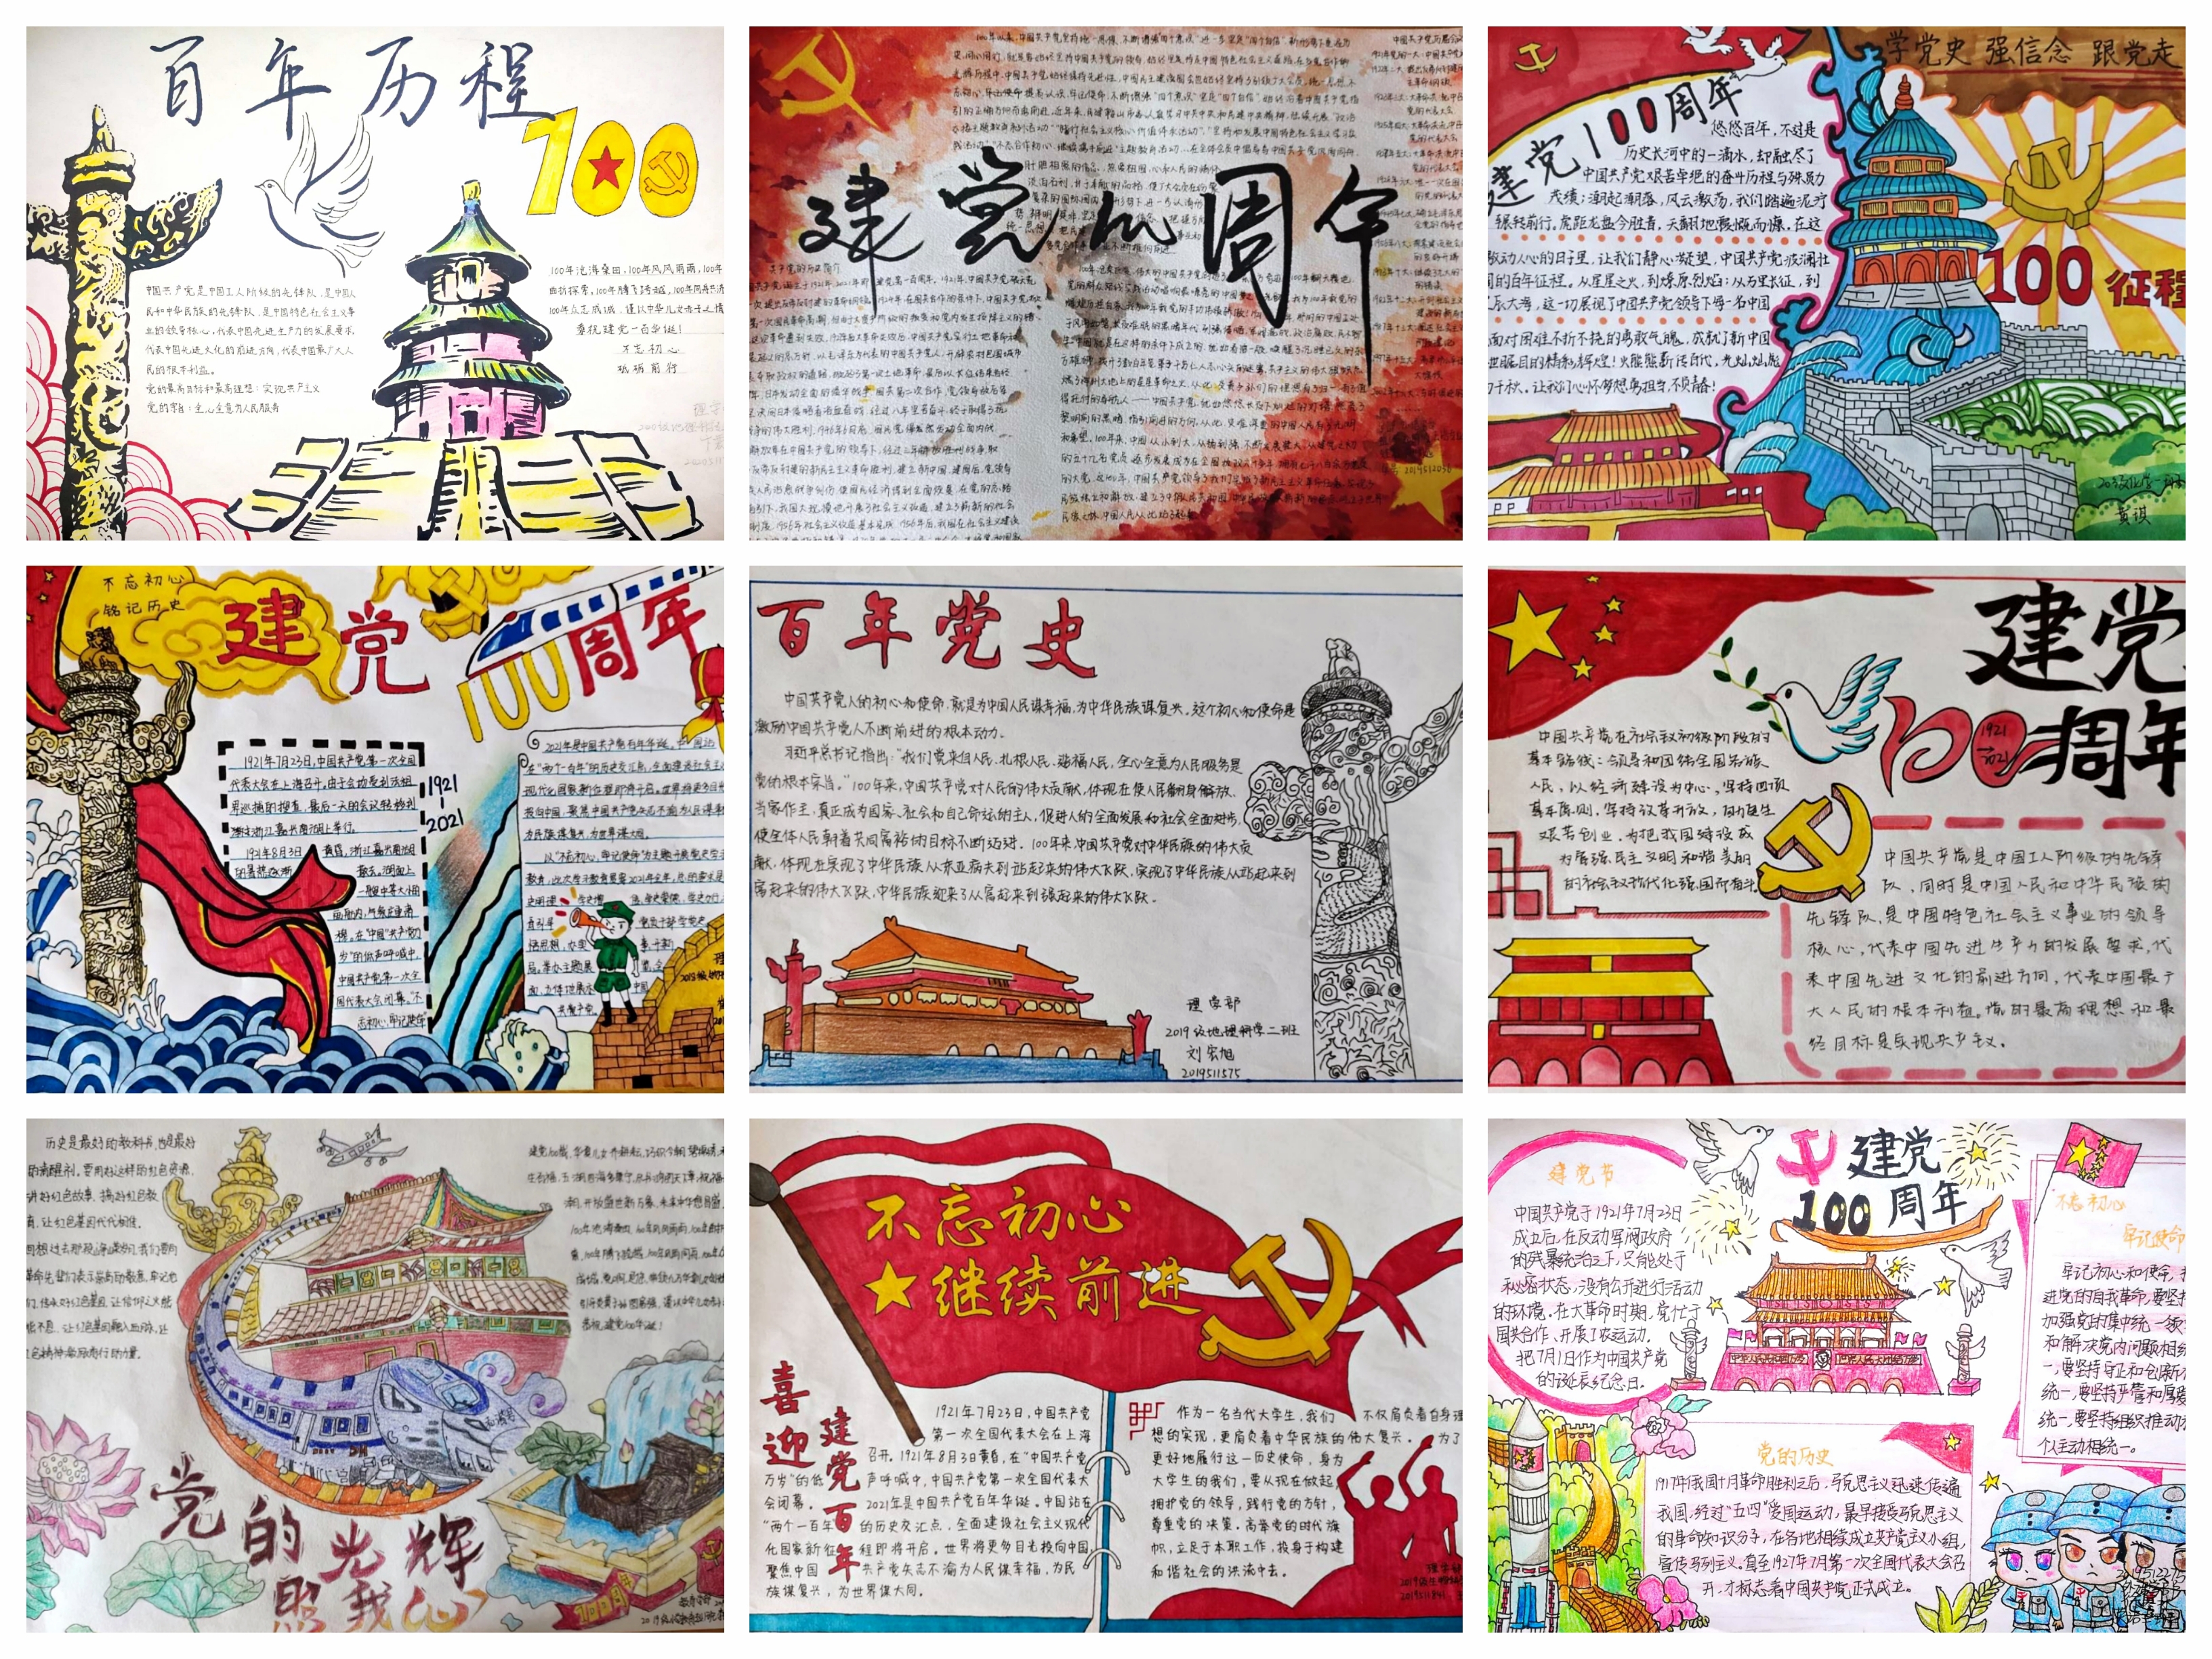 "党史百年"手抄报征集展示活动    本次活动围绕中国共产党的奋斗历史